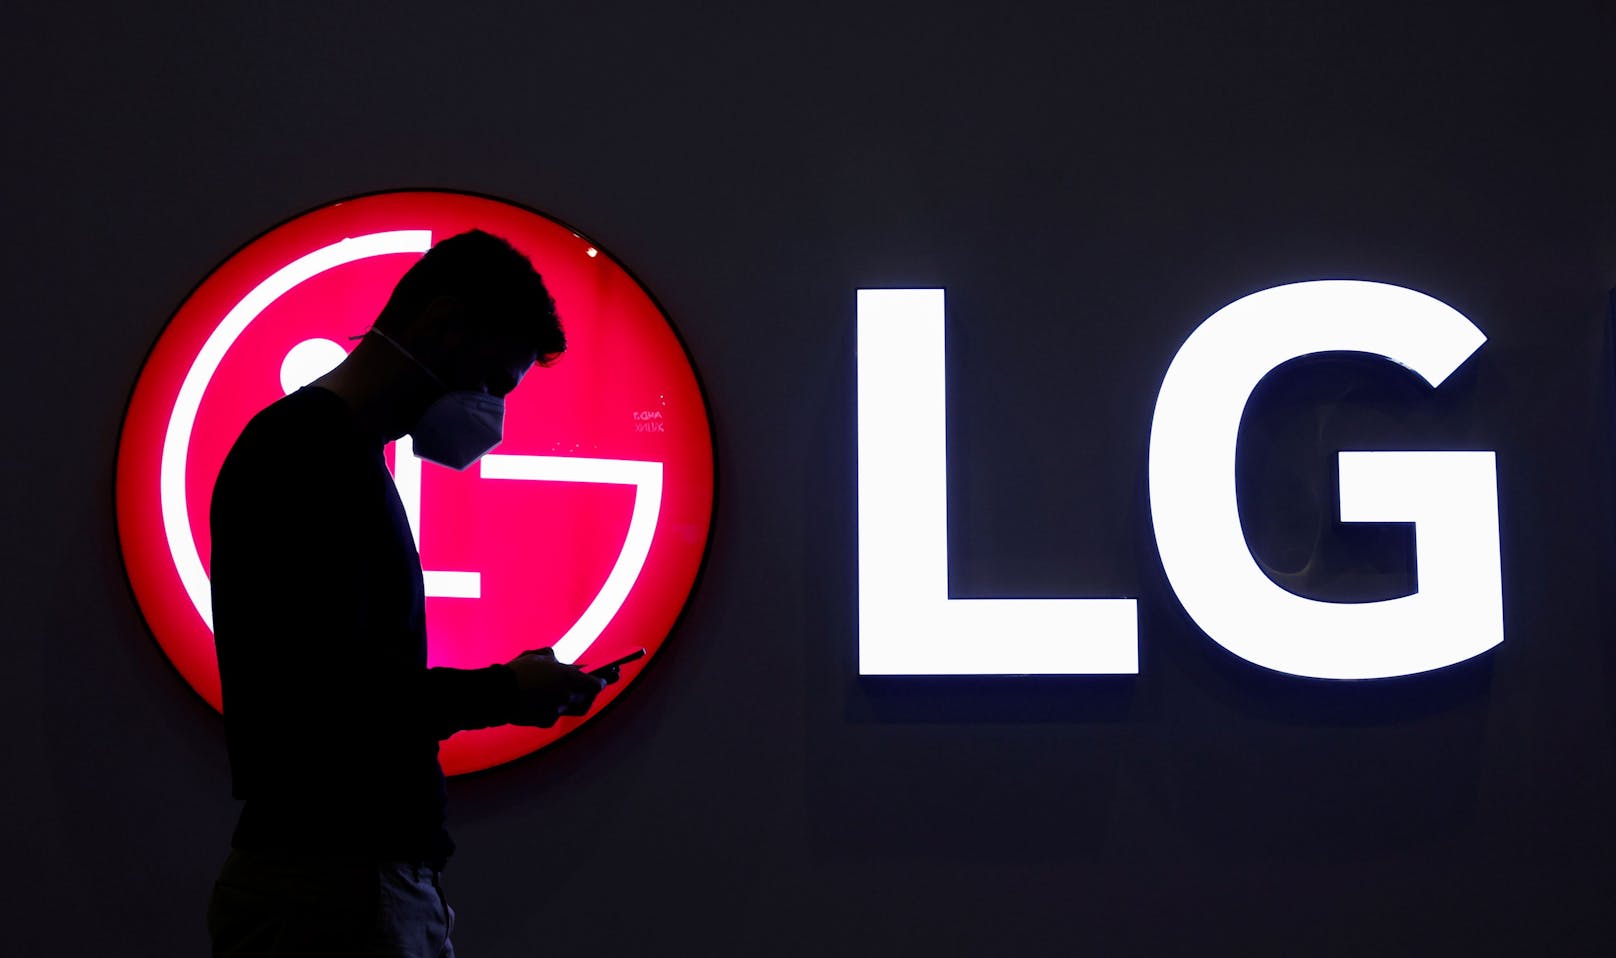 LG präsentiert auf der Milan Design Week die neuesten, führenden Geräte und Lösungen.